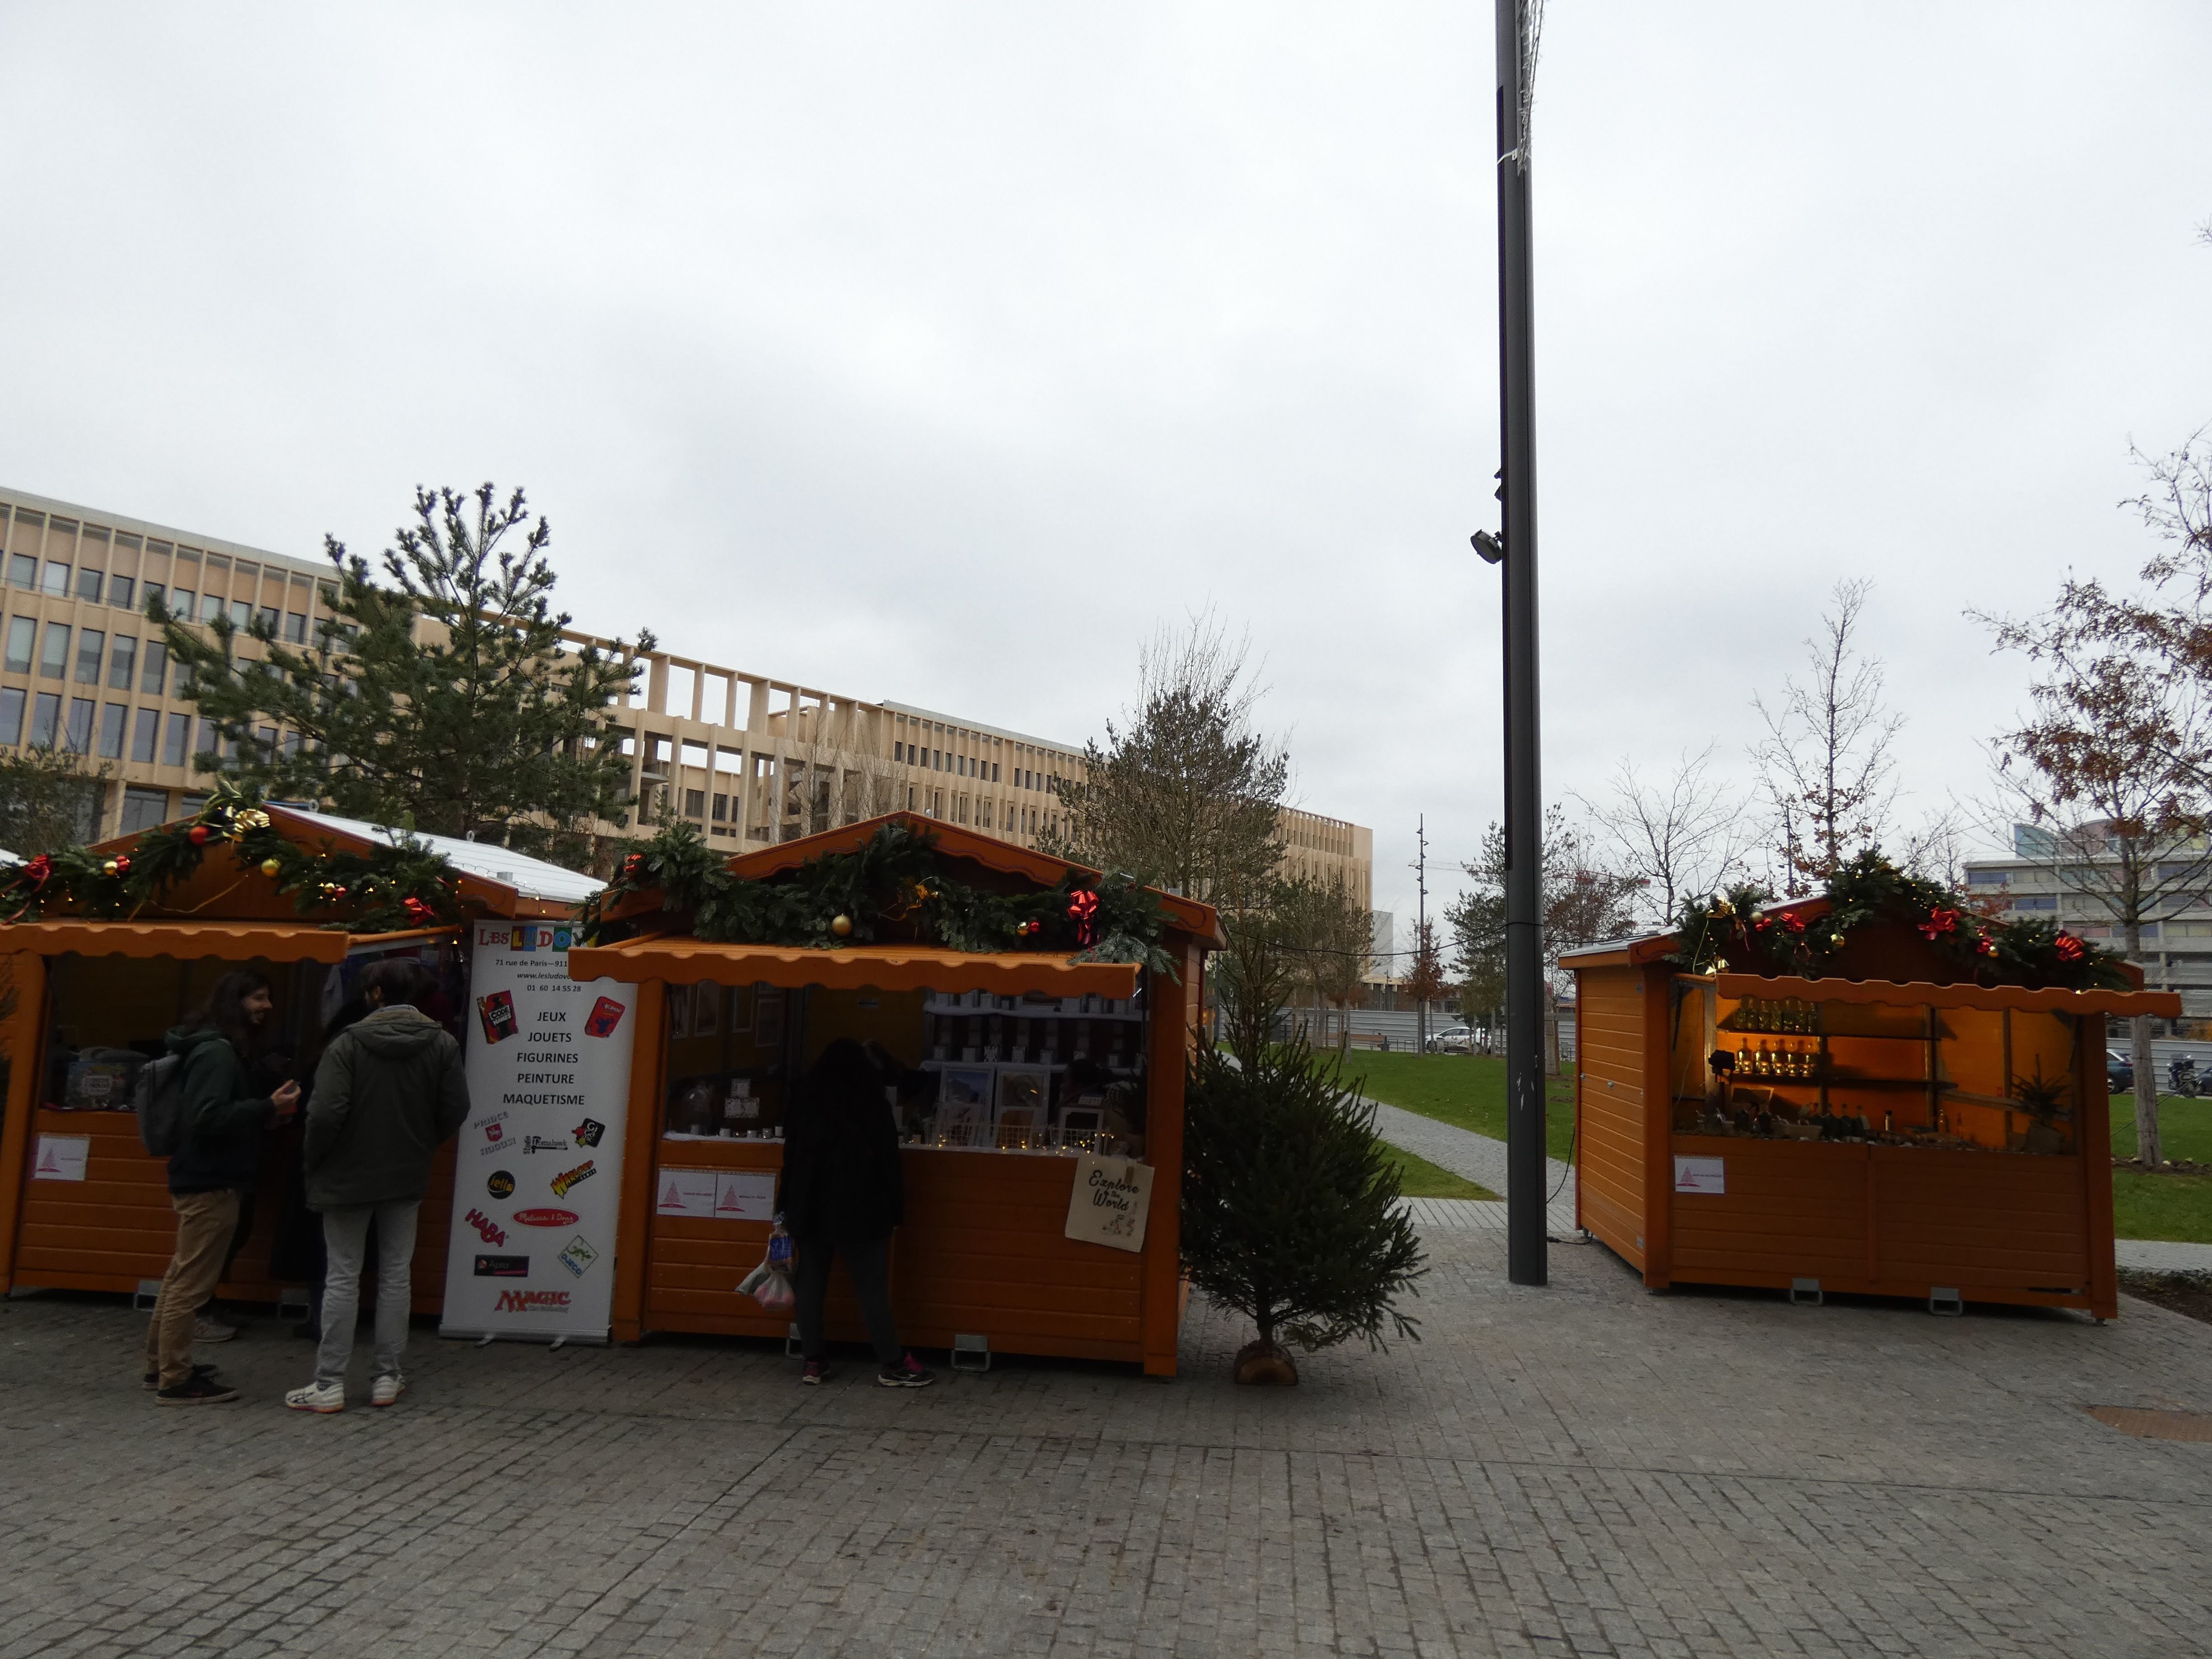 Palaiseau, le 15 décembre 2021. Le plateau de Saclay accueille son premier marché de Noël. Huit chalets ont été installés sur une place du quartier de l'Ecole polytechnique. LP/Cécile Chevallier.